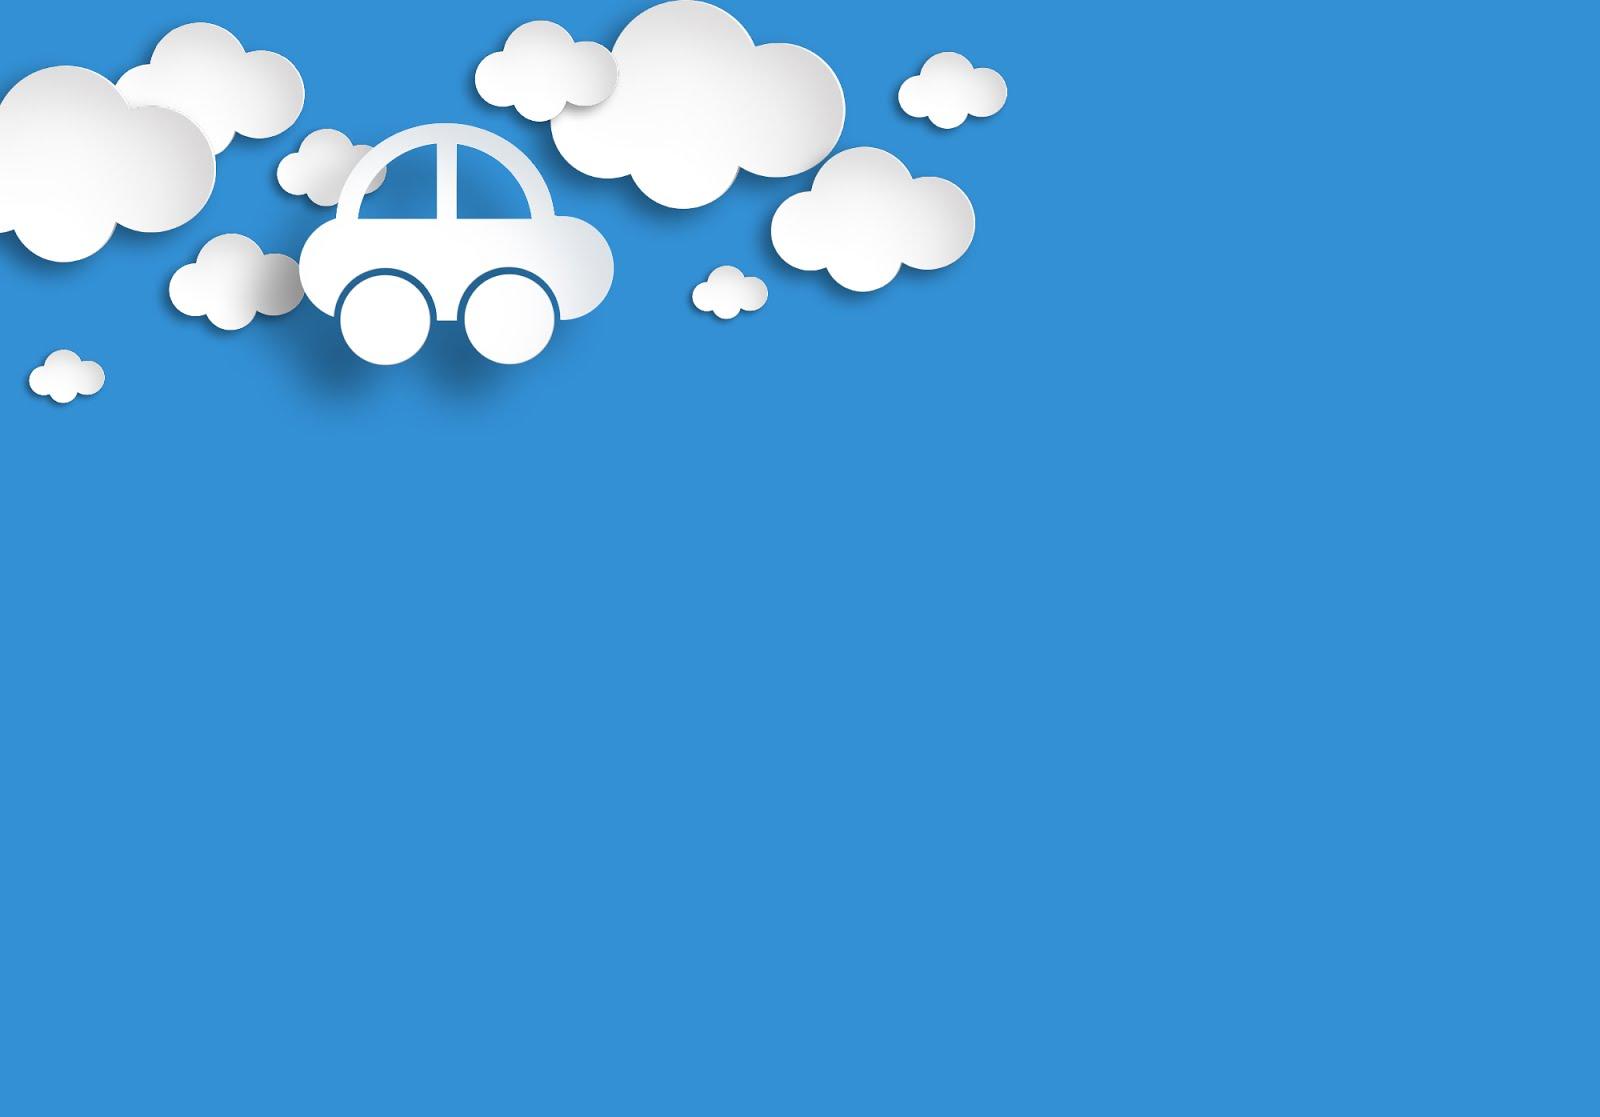 50+ hình nền powerpoint màu xanh dương đẹp dễ chịu nhẹ nhàng | Winter  background, Snowflake background, Powerpoint templates